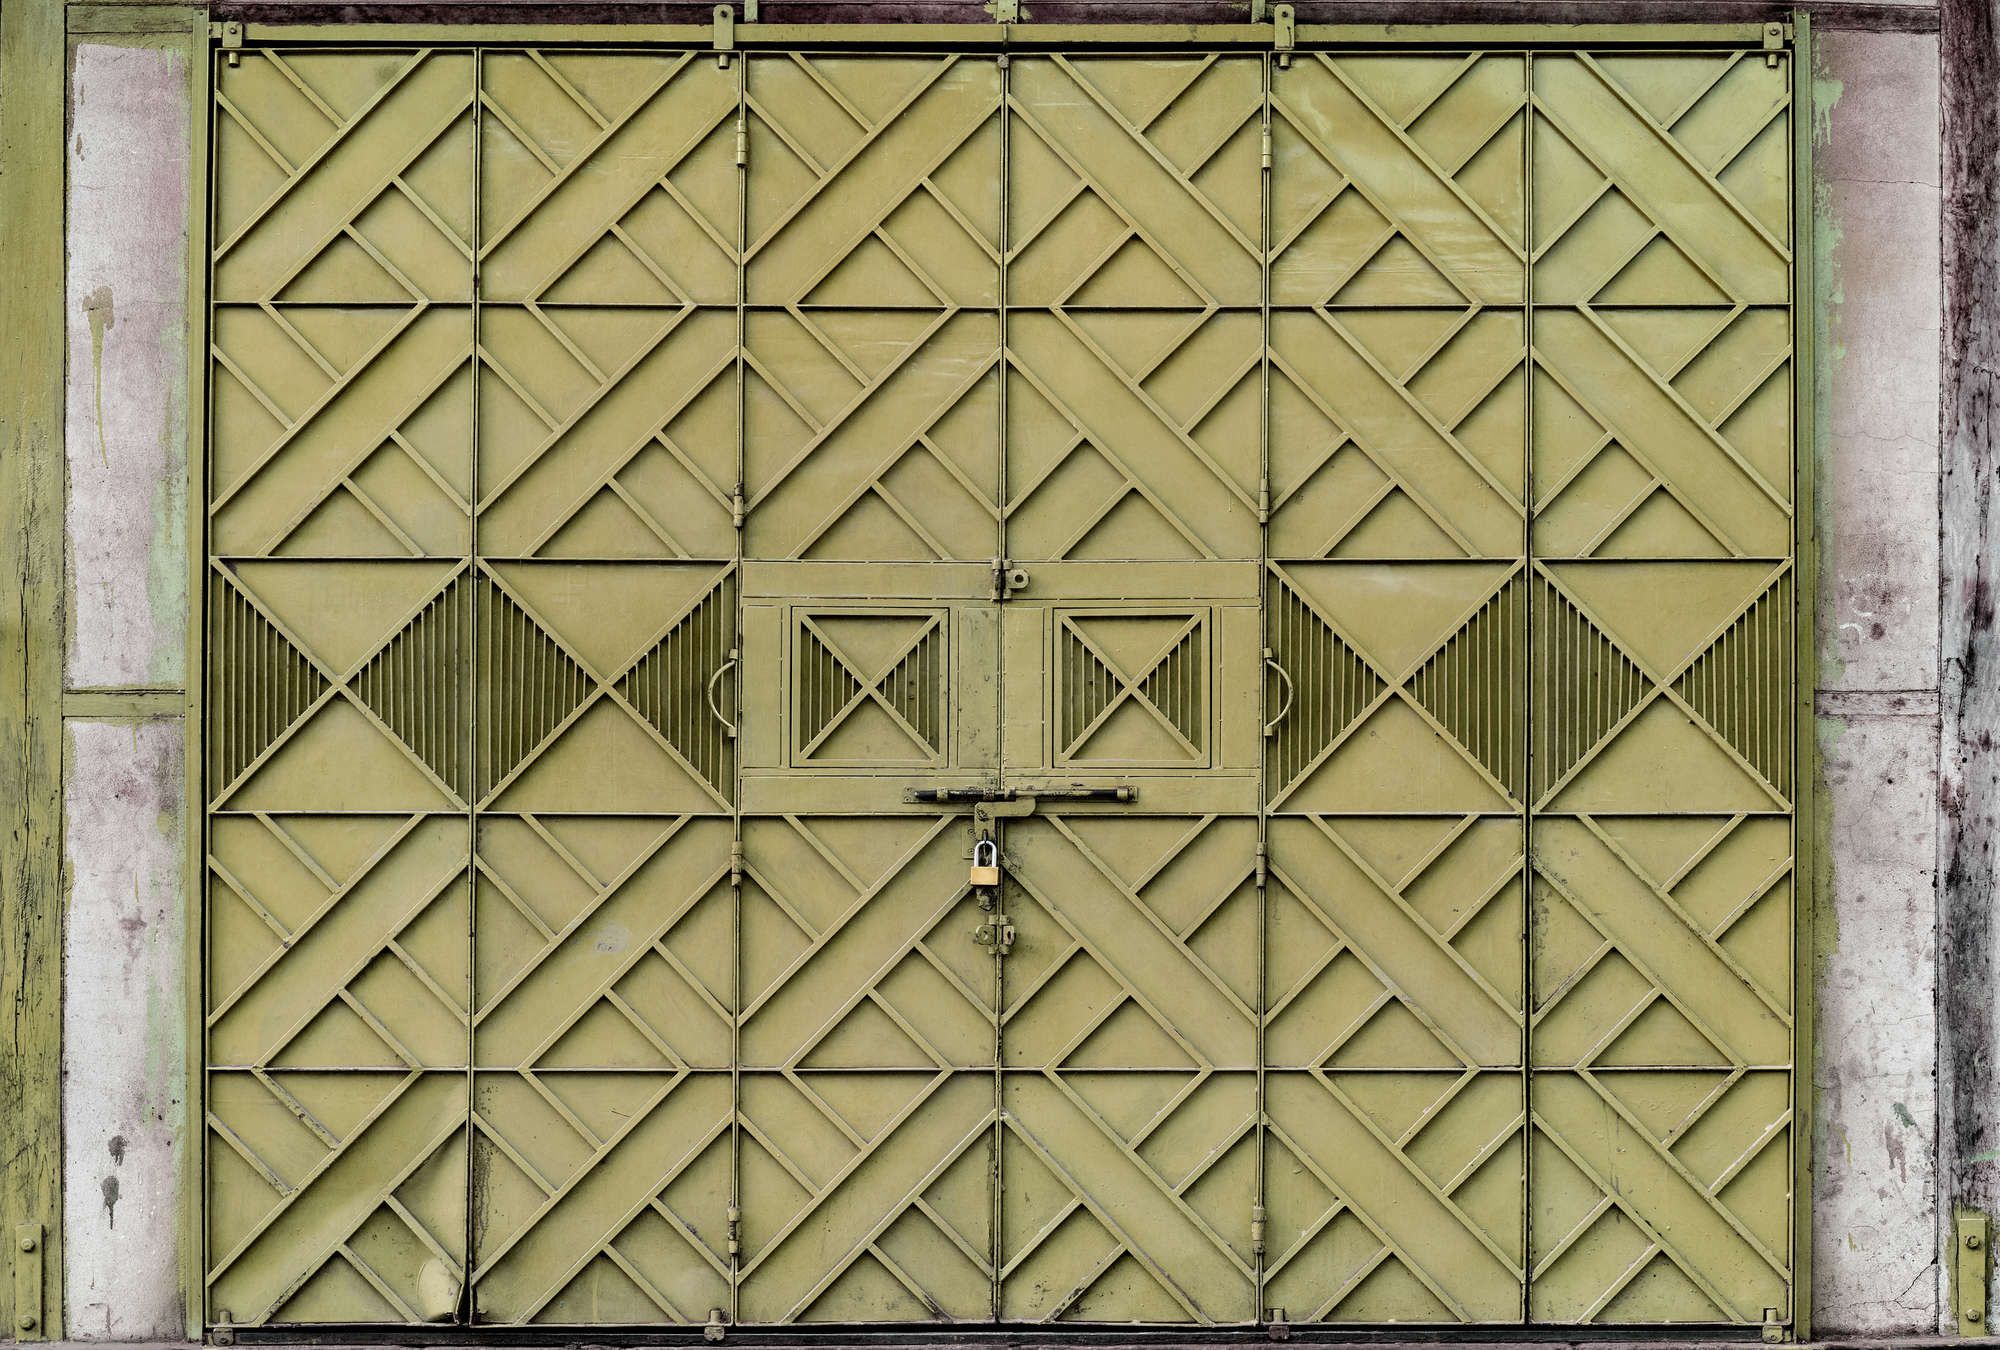             Fotomural »agra« - Primer plano de una puerta de metal verde con decoraciones en forma de diamante - Tela no tejida de primera calidad, lisa y ligeramente brillante.
        